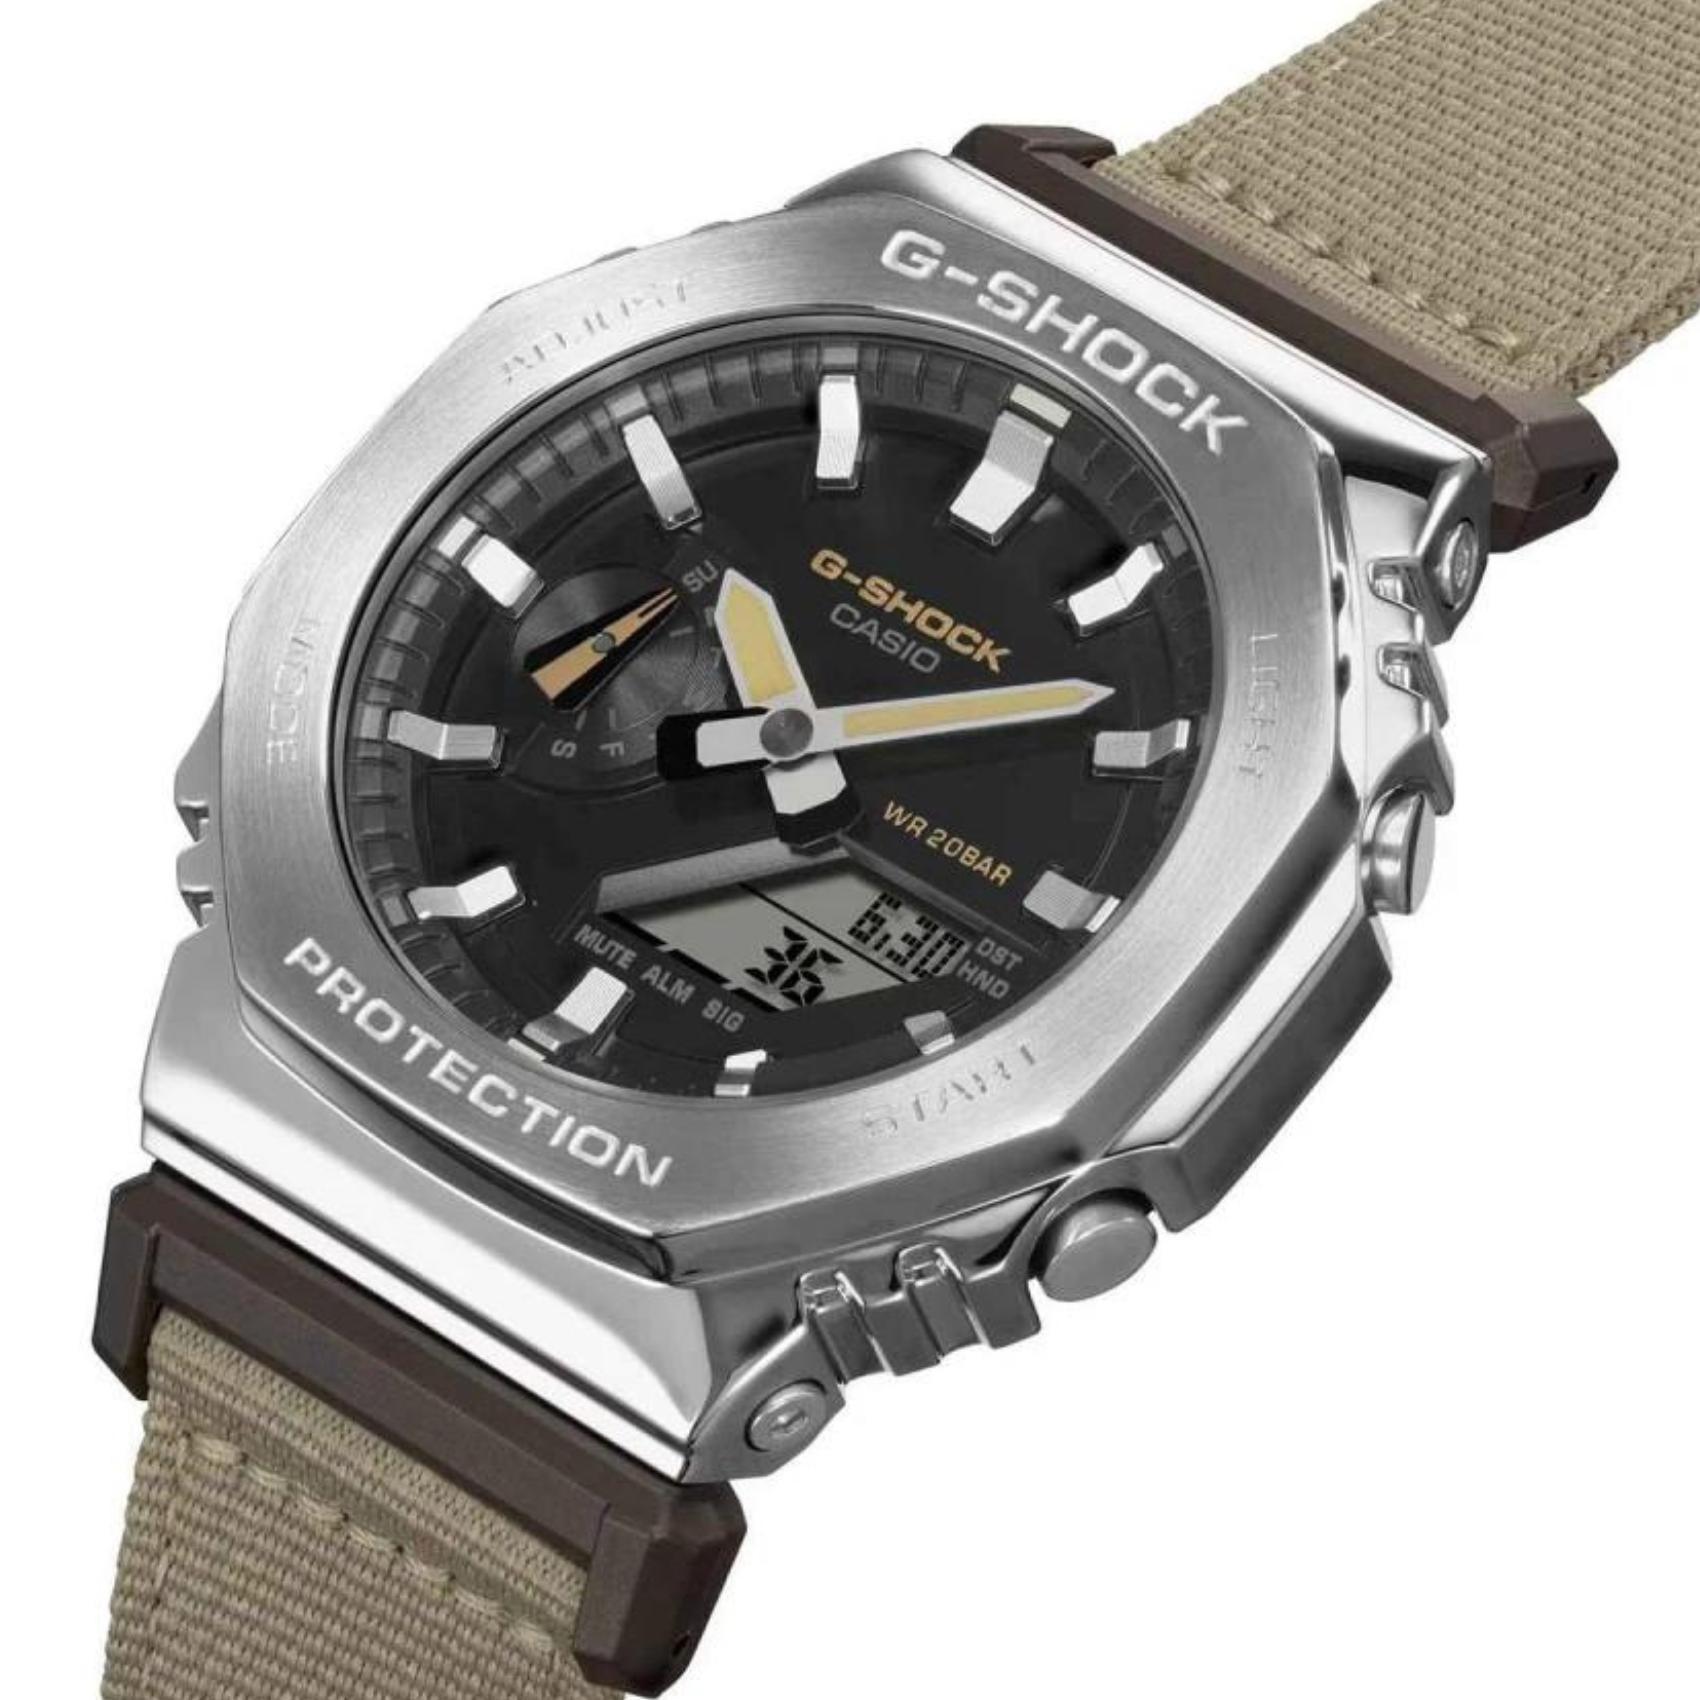 Ρολόι χρονογράφος Casio G-Shock GM-2100C-5AER με μπεζ καουτσούκ λουράκι, μαύρο καντράν μεγέθους 44.4mm anadigi κατάλληλο για καταδύσεις.